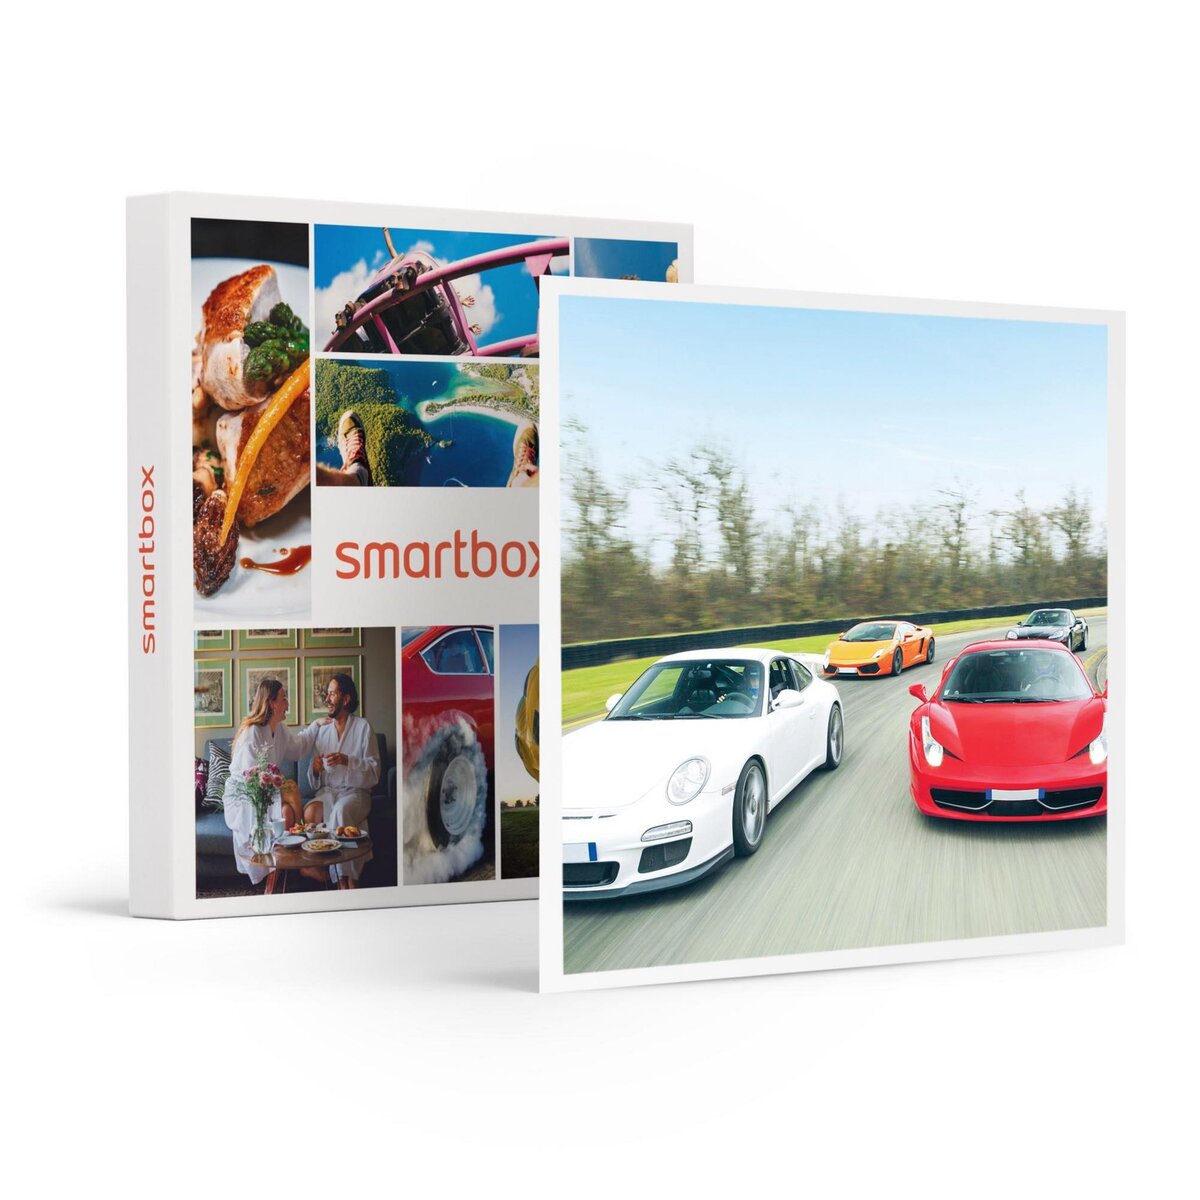 Smartbox Pilotage 2 tours sur circuit en Porsche 991 GT3 RS à Biltzheim - Coffret Cadeau Sport & Aventure